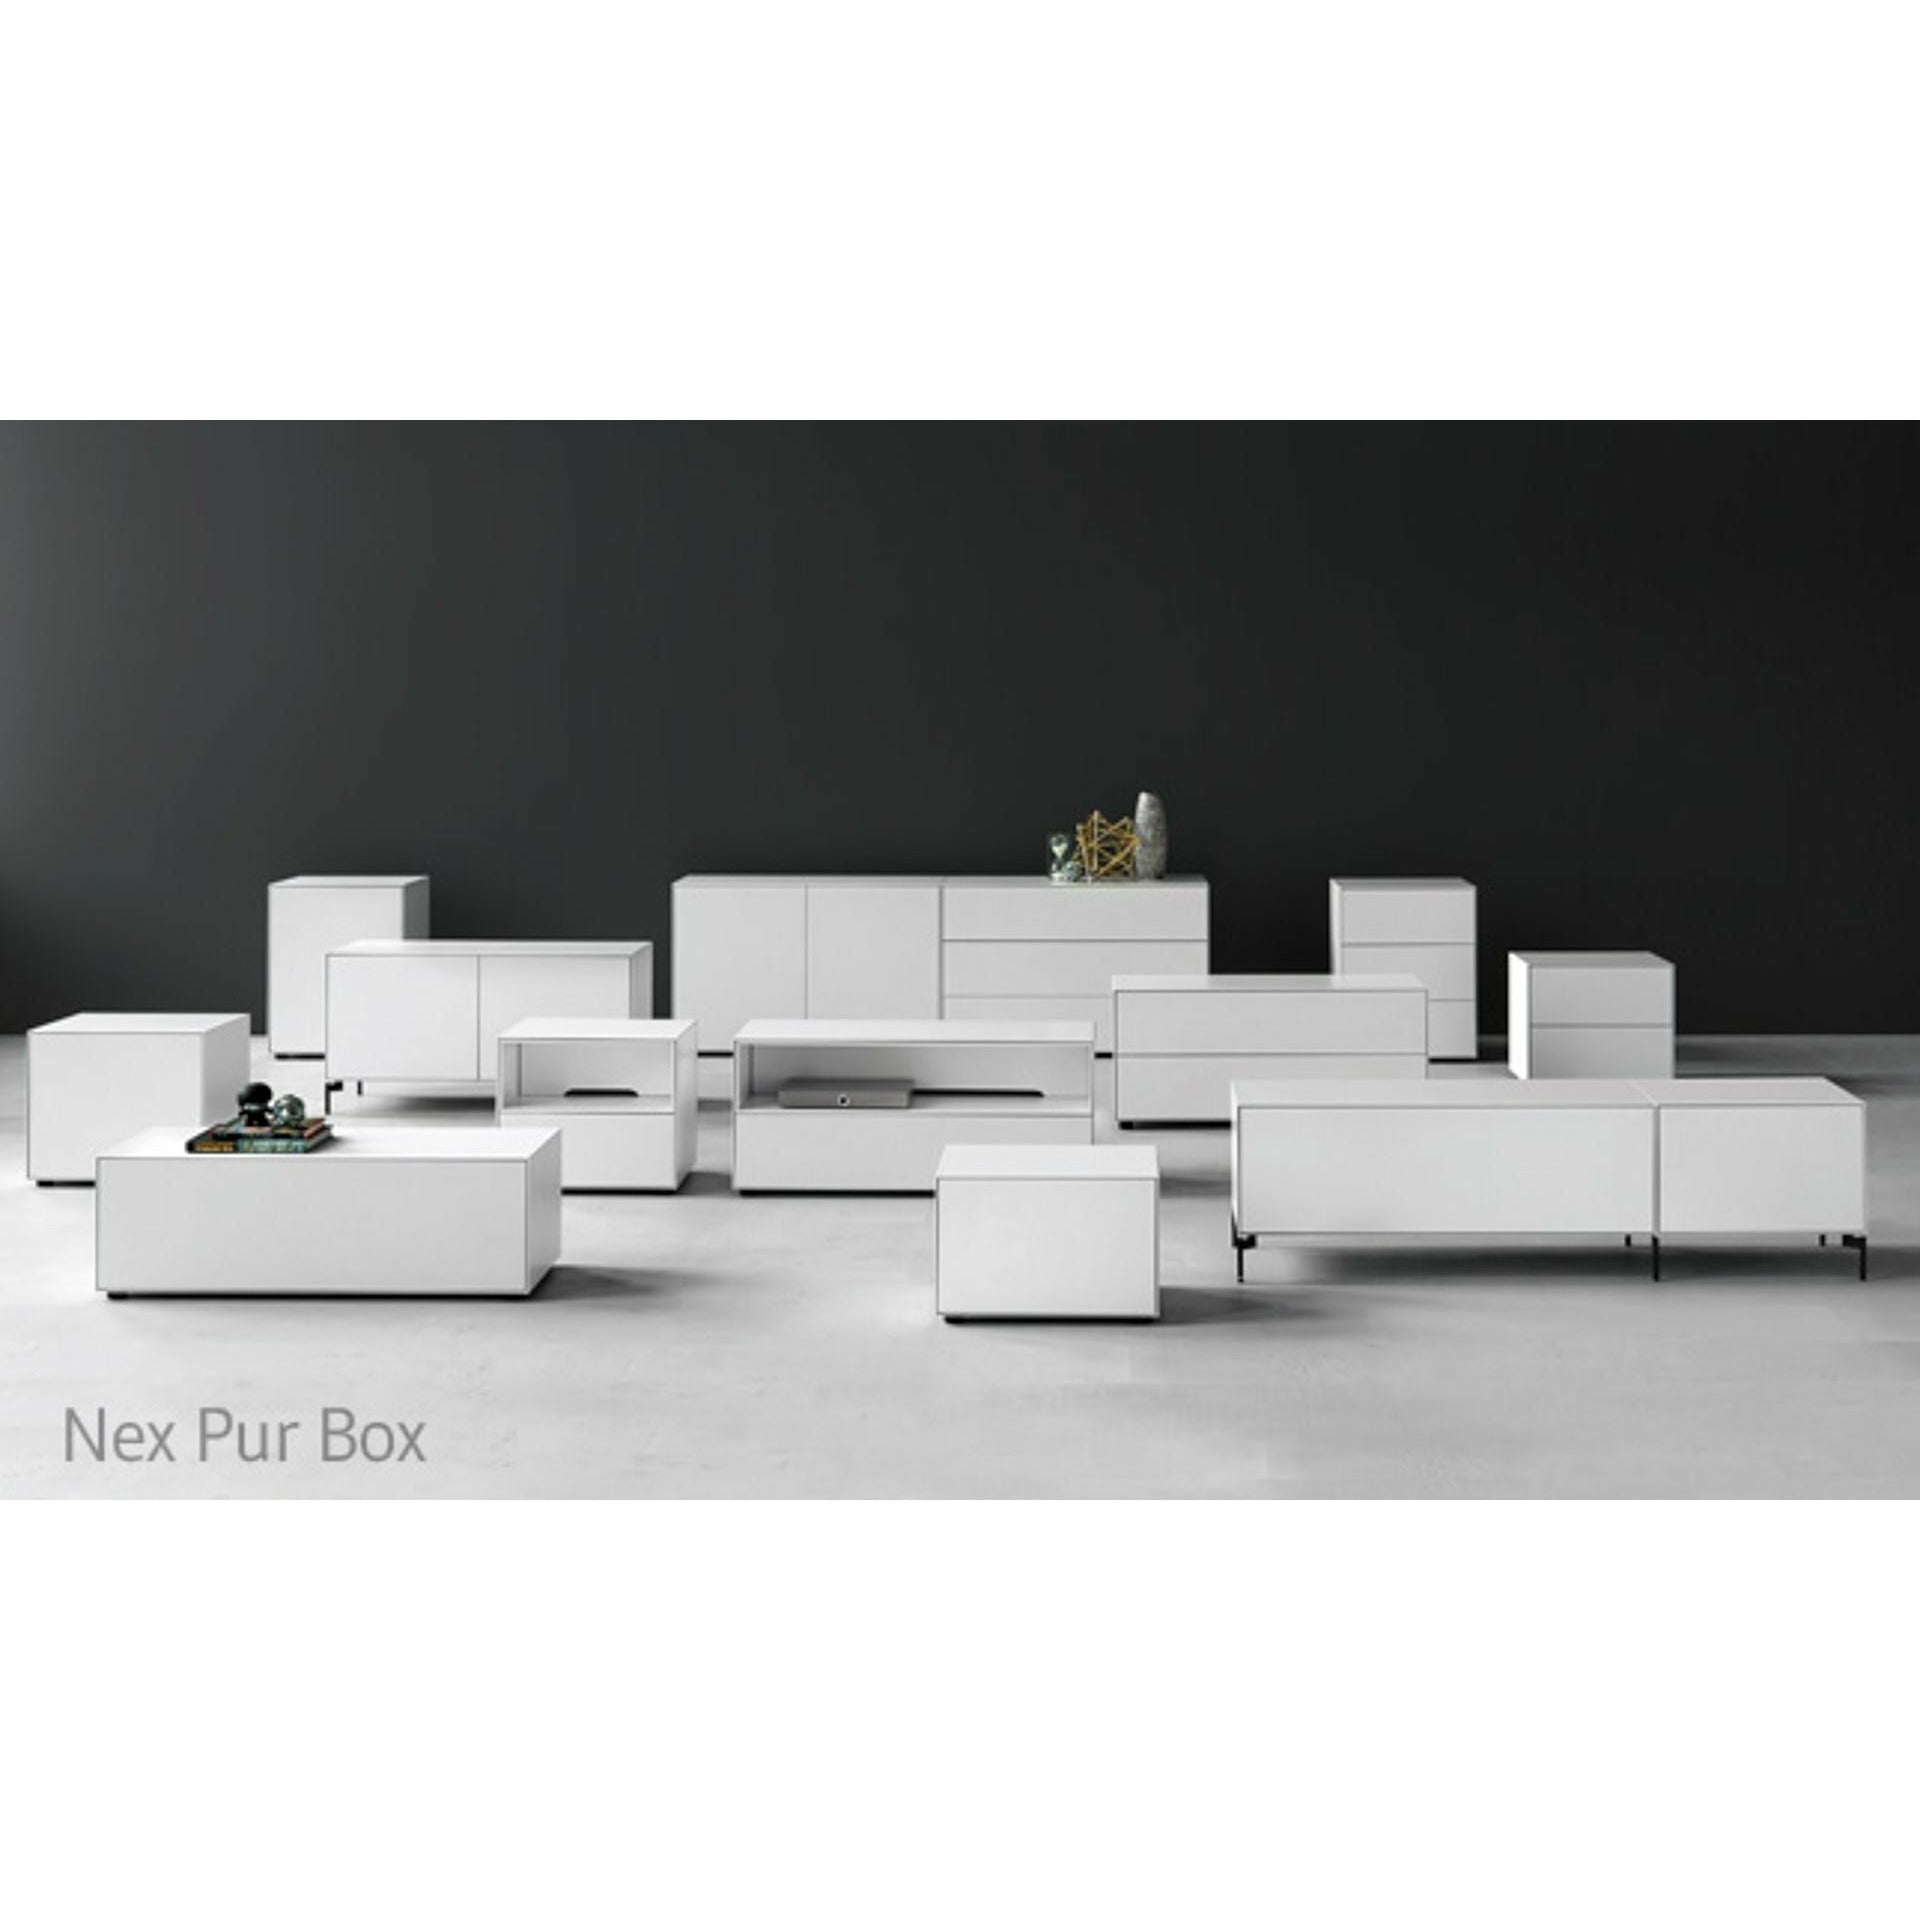 Piure Nex Pur Box Media Flap Hx W 37,5x120 cm, 1 hylla